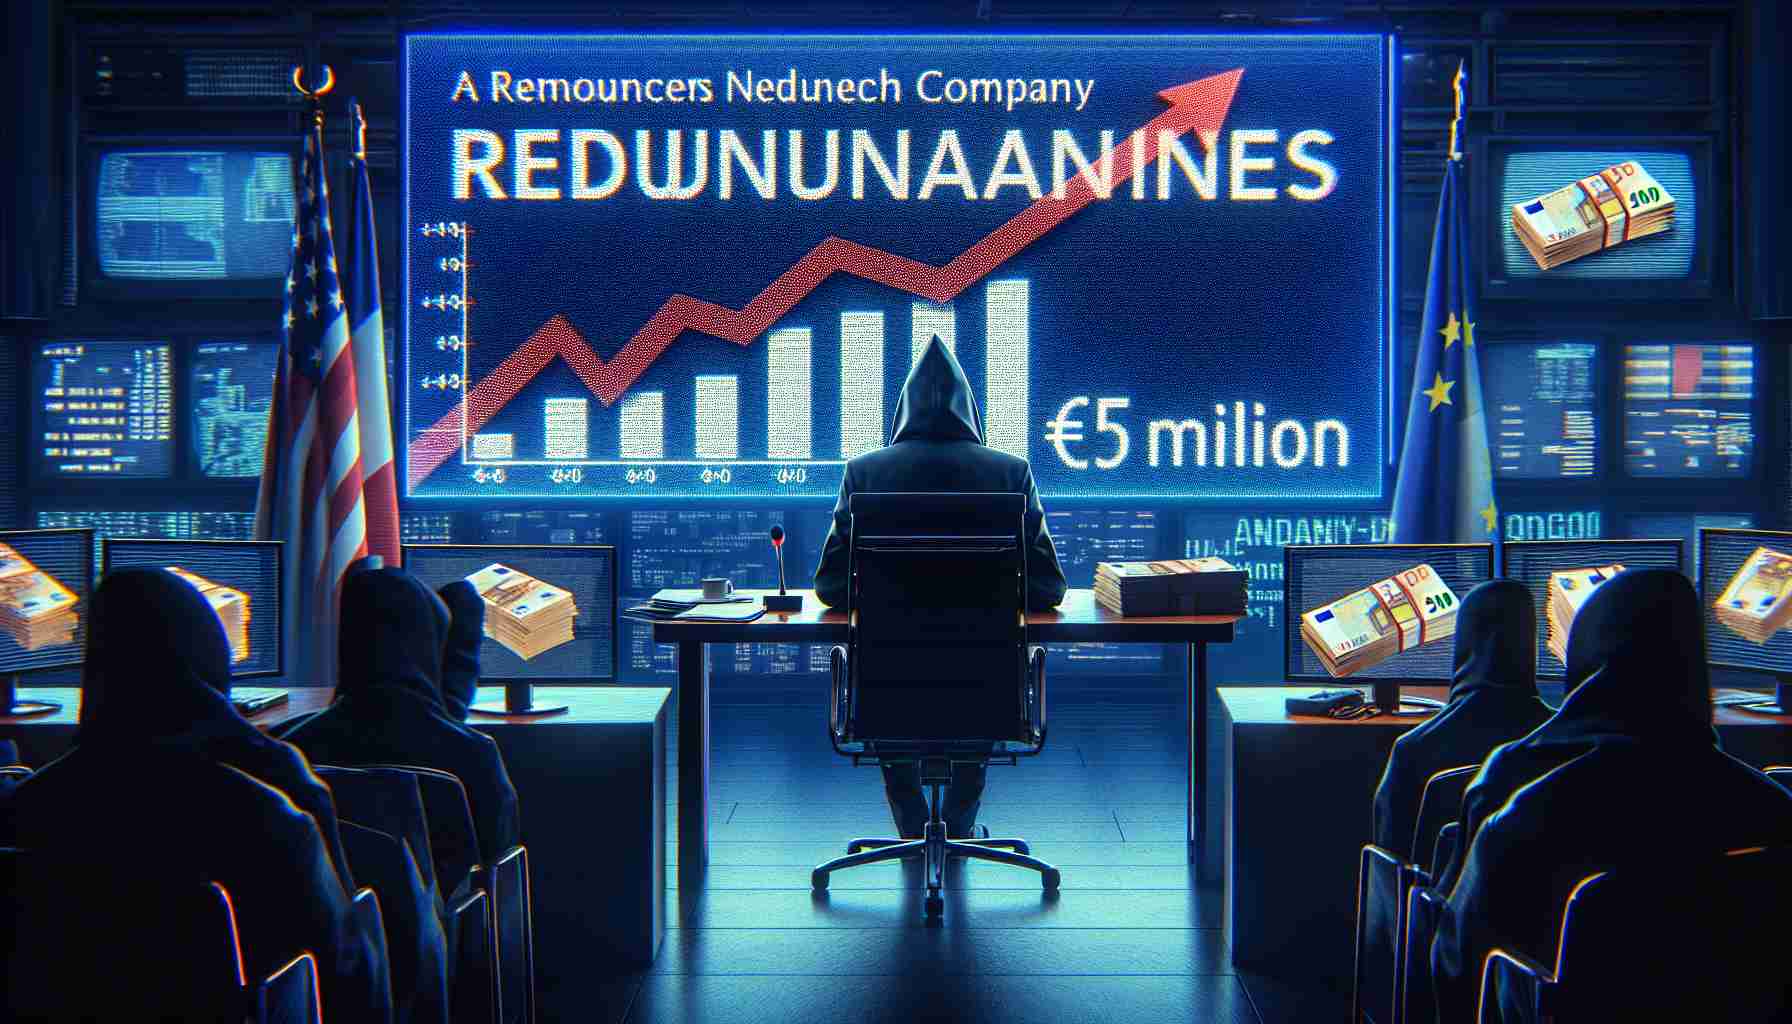 Glen Dimplex Announces Redundancies Amidst €50 Million Investment